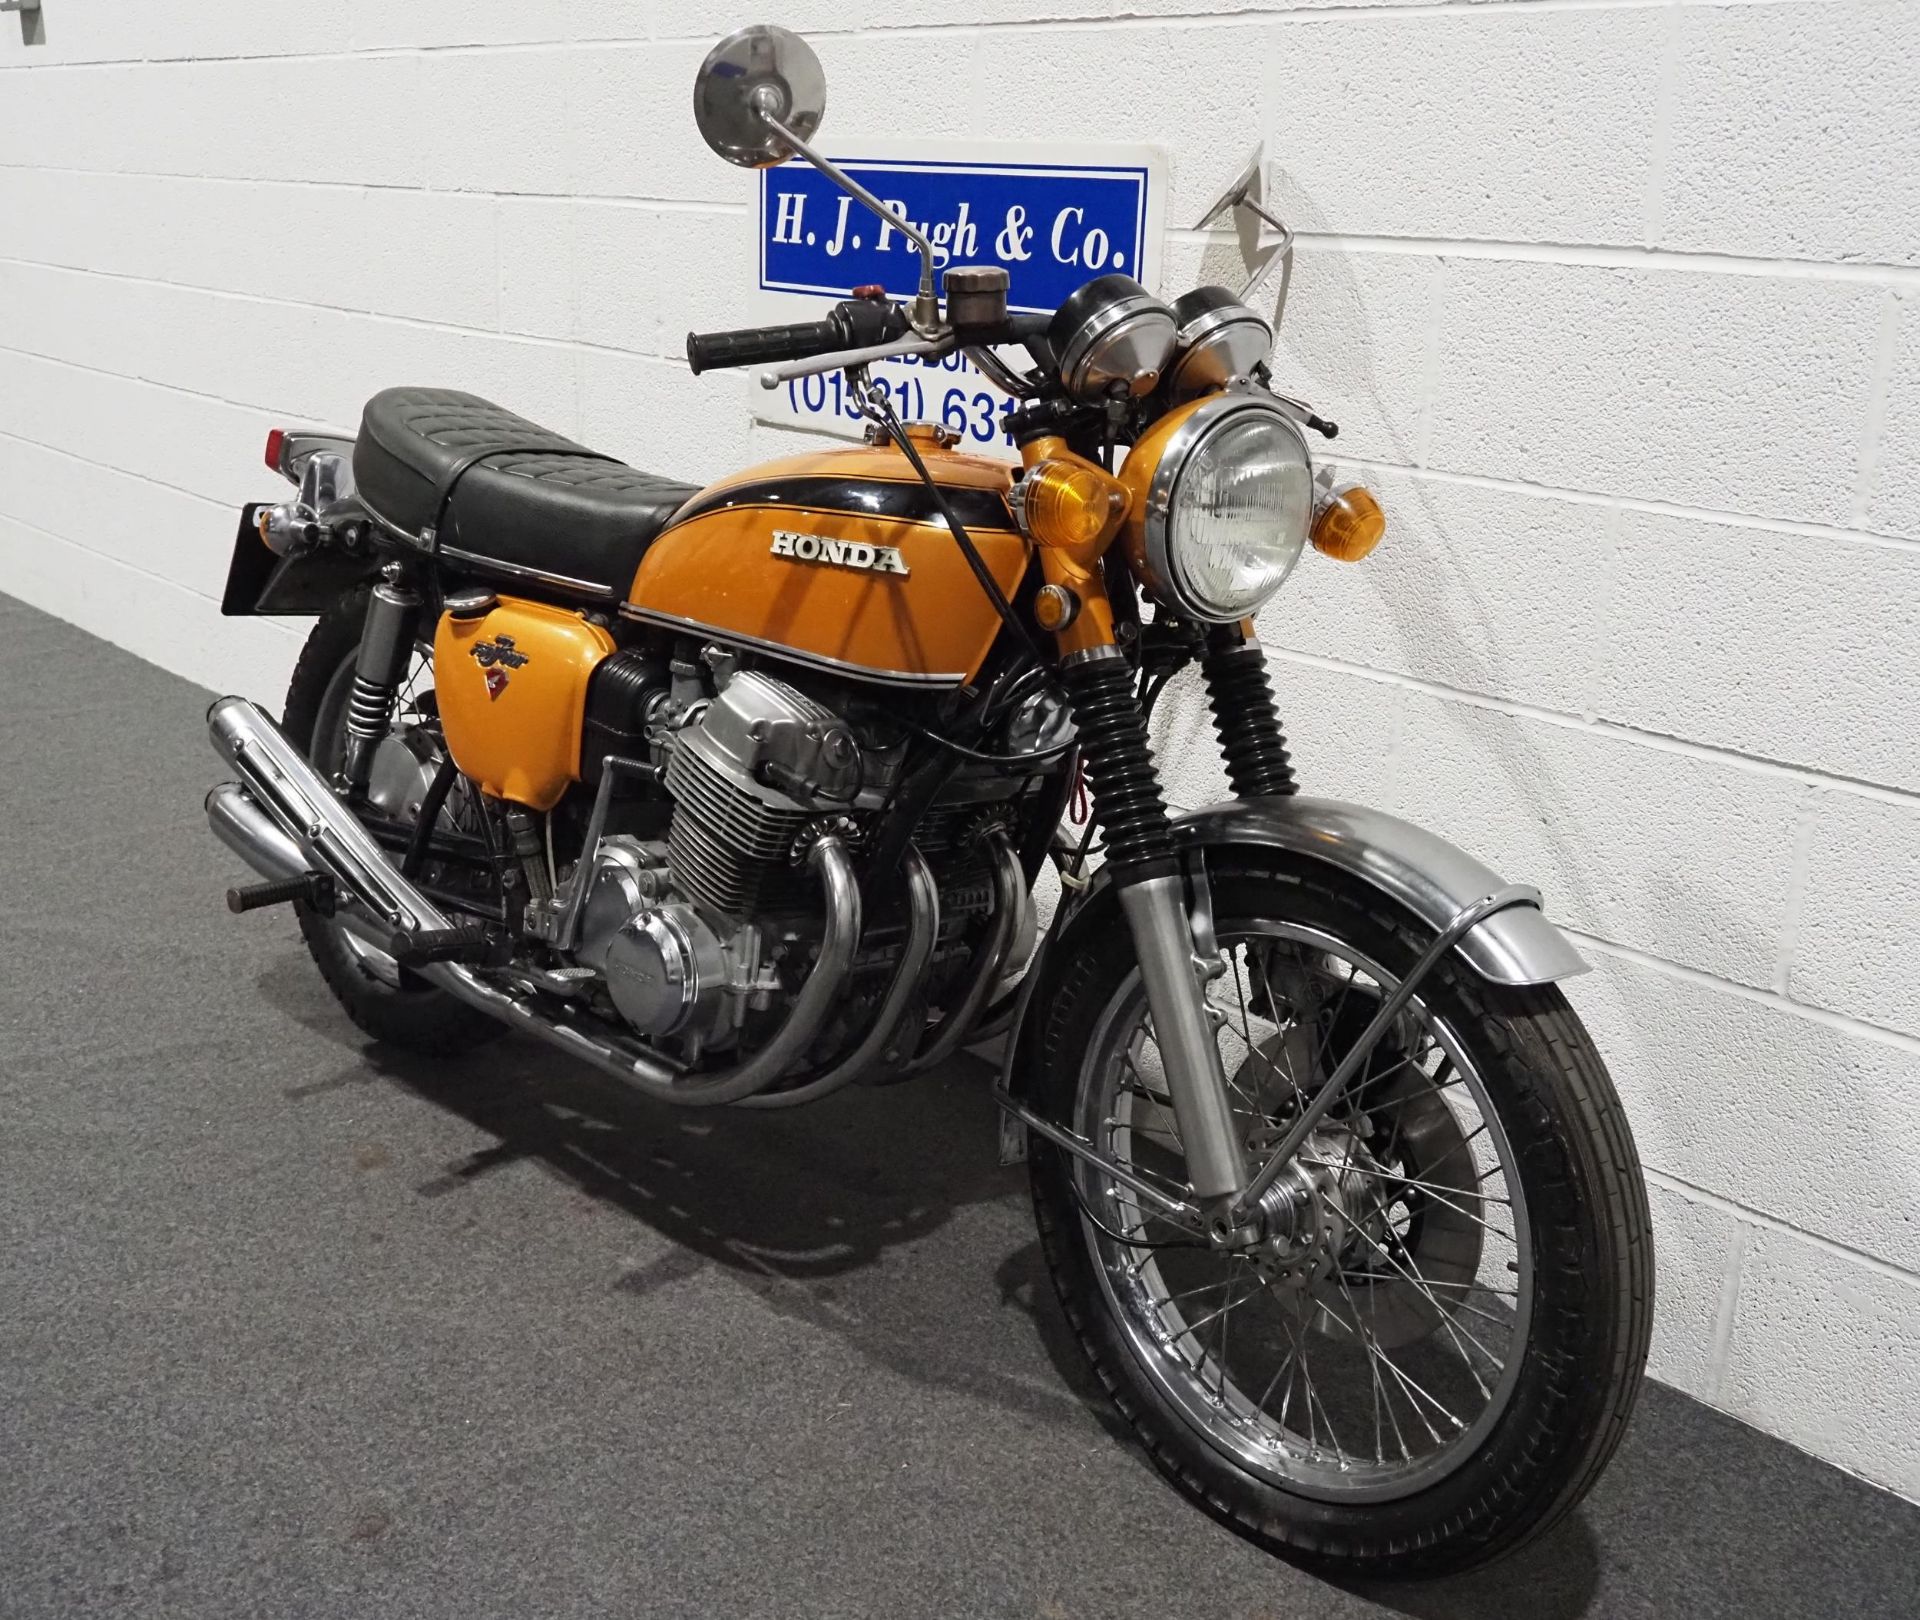 Honda 750-4 motorcycle, 1971, 750cc Frame no. CB7501118119 Engine no. CB7501117934 Runs and rides, - Image 2 of 6